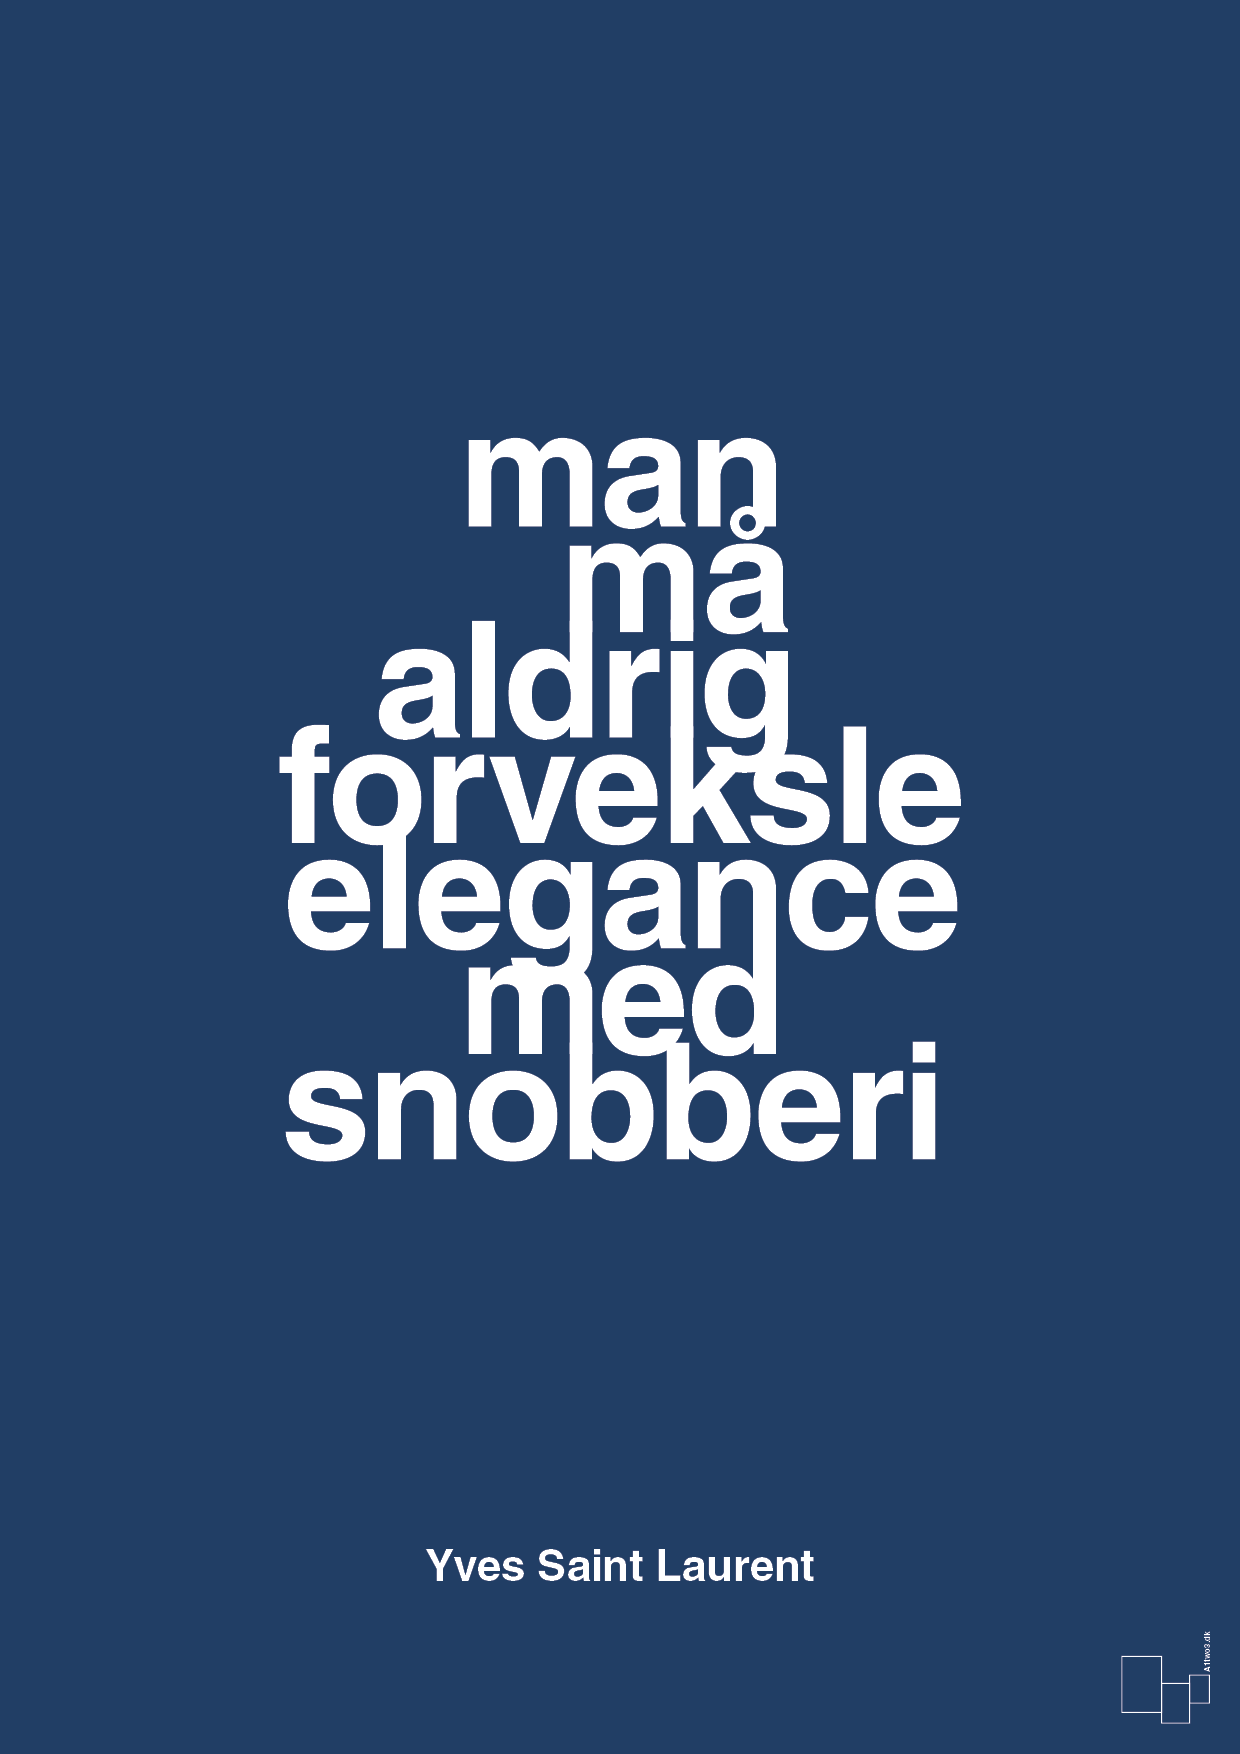 man må aldrig forveksle elegance med snobberi - Plakat med Citater i Lapis Blue